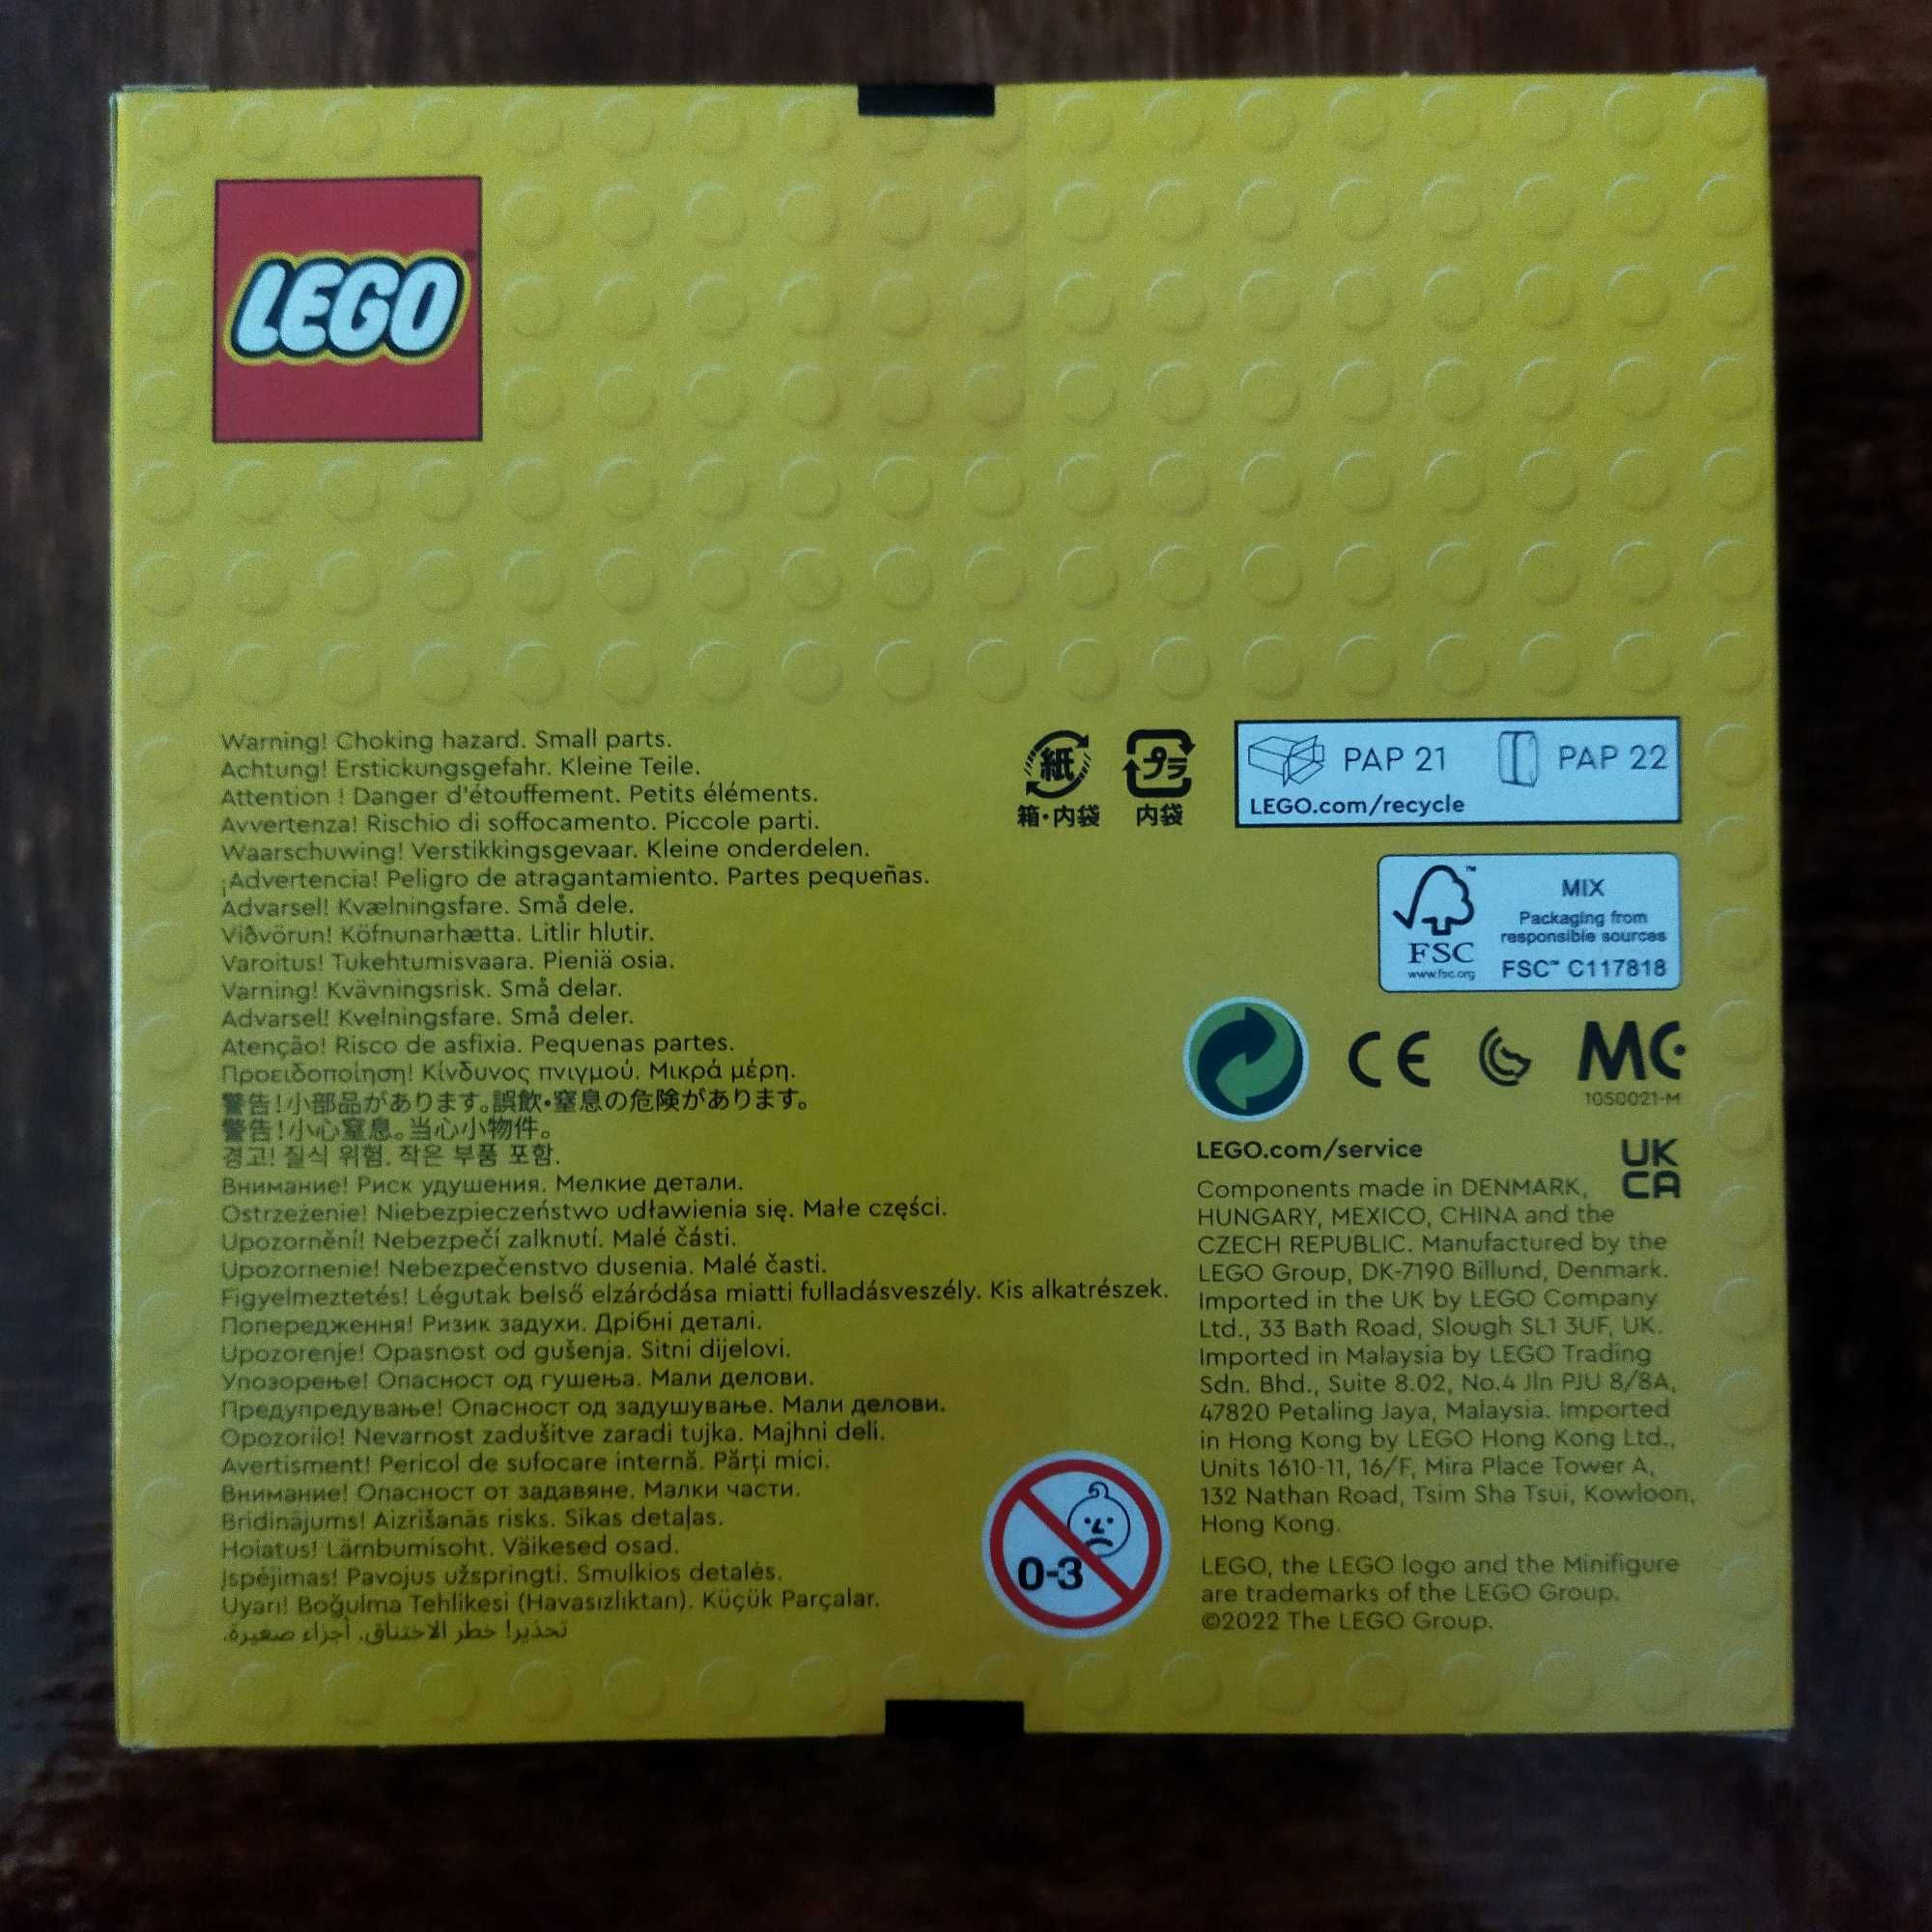 643.5196 Lego Fantasy Adventure Ride